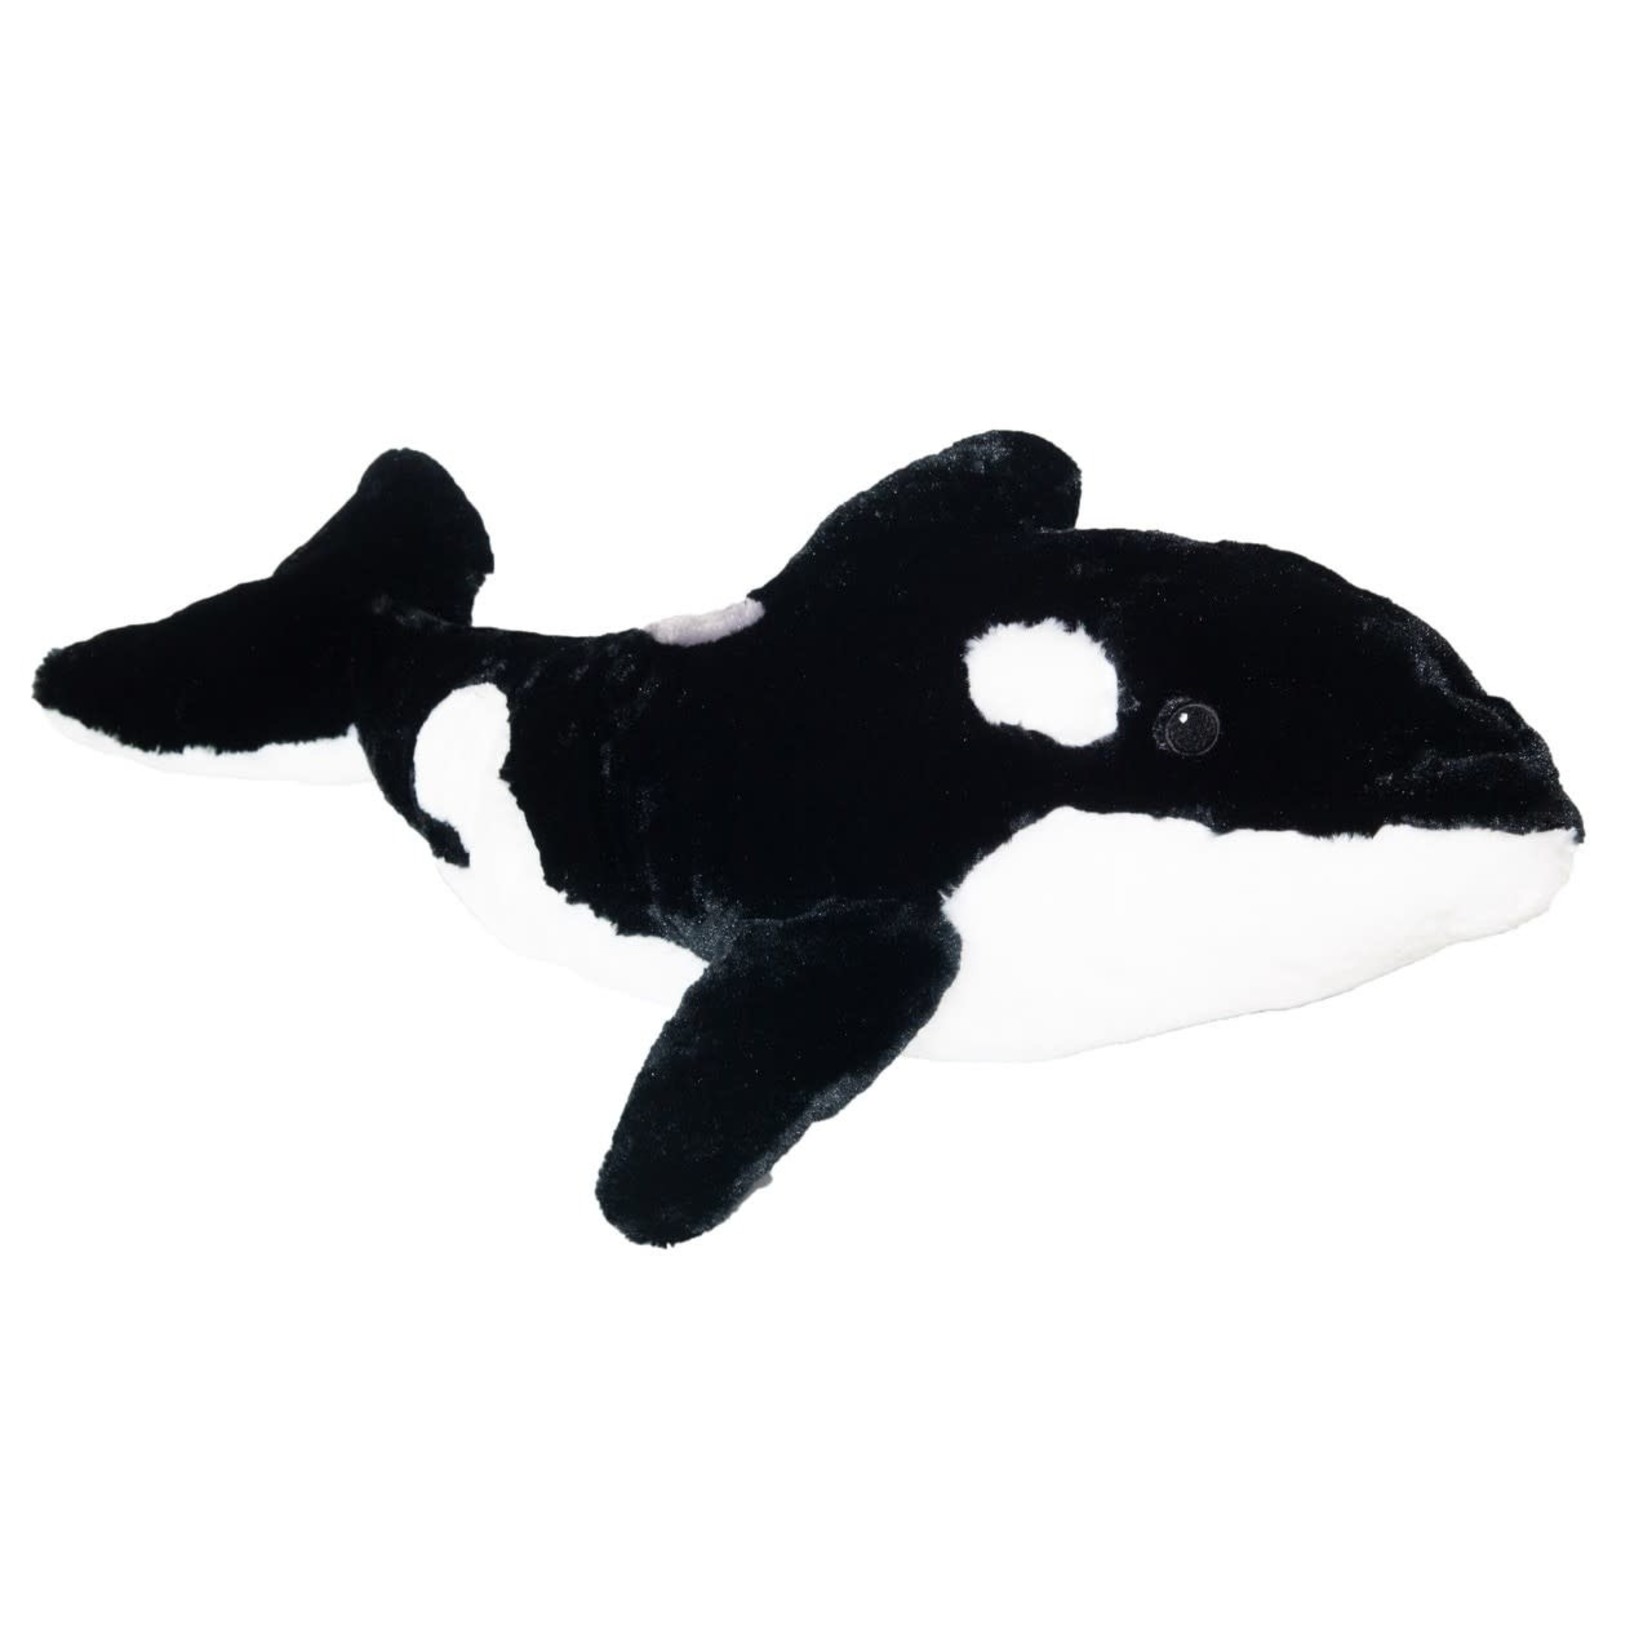 Ocean Wise Orca 15"